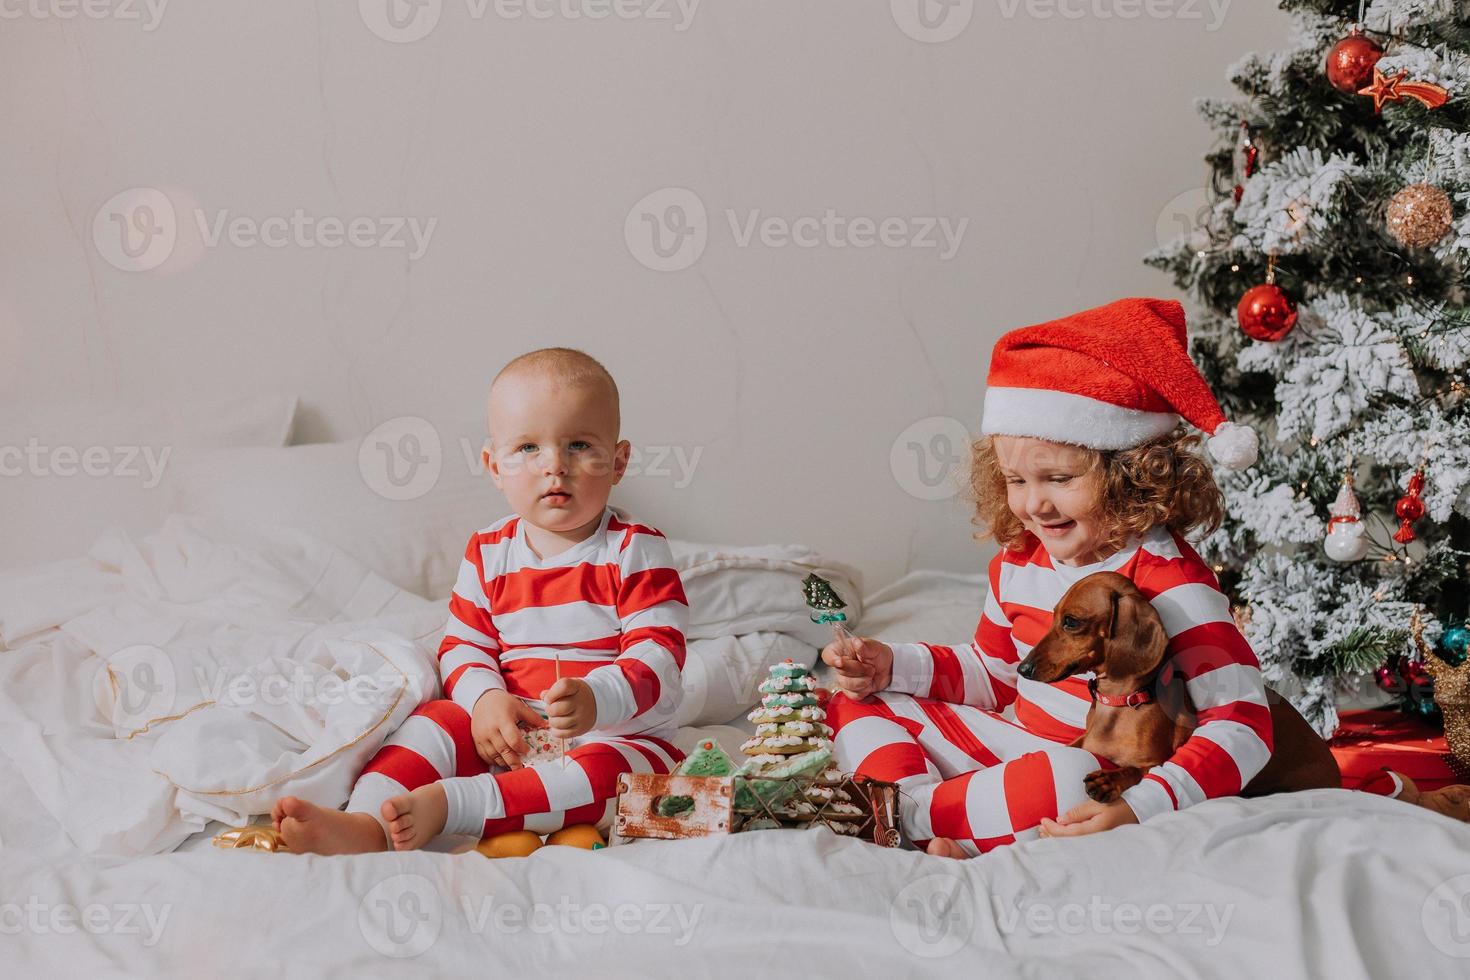 kinder in rot-weißen pyjamas sitzen im bett und teilen weihnachtssüßigkeiten miteinander und mit ihrem hund. bruder und schwester, junge und mädchen feiern das neue jahr. Platz für Text. hochwertiges Foto